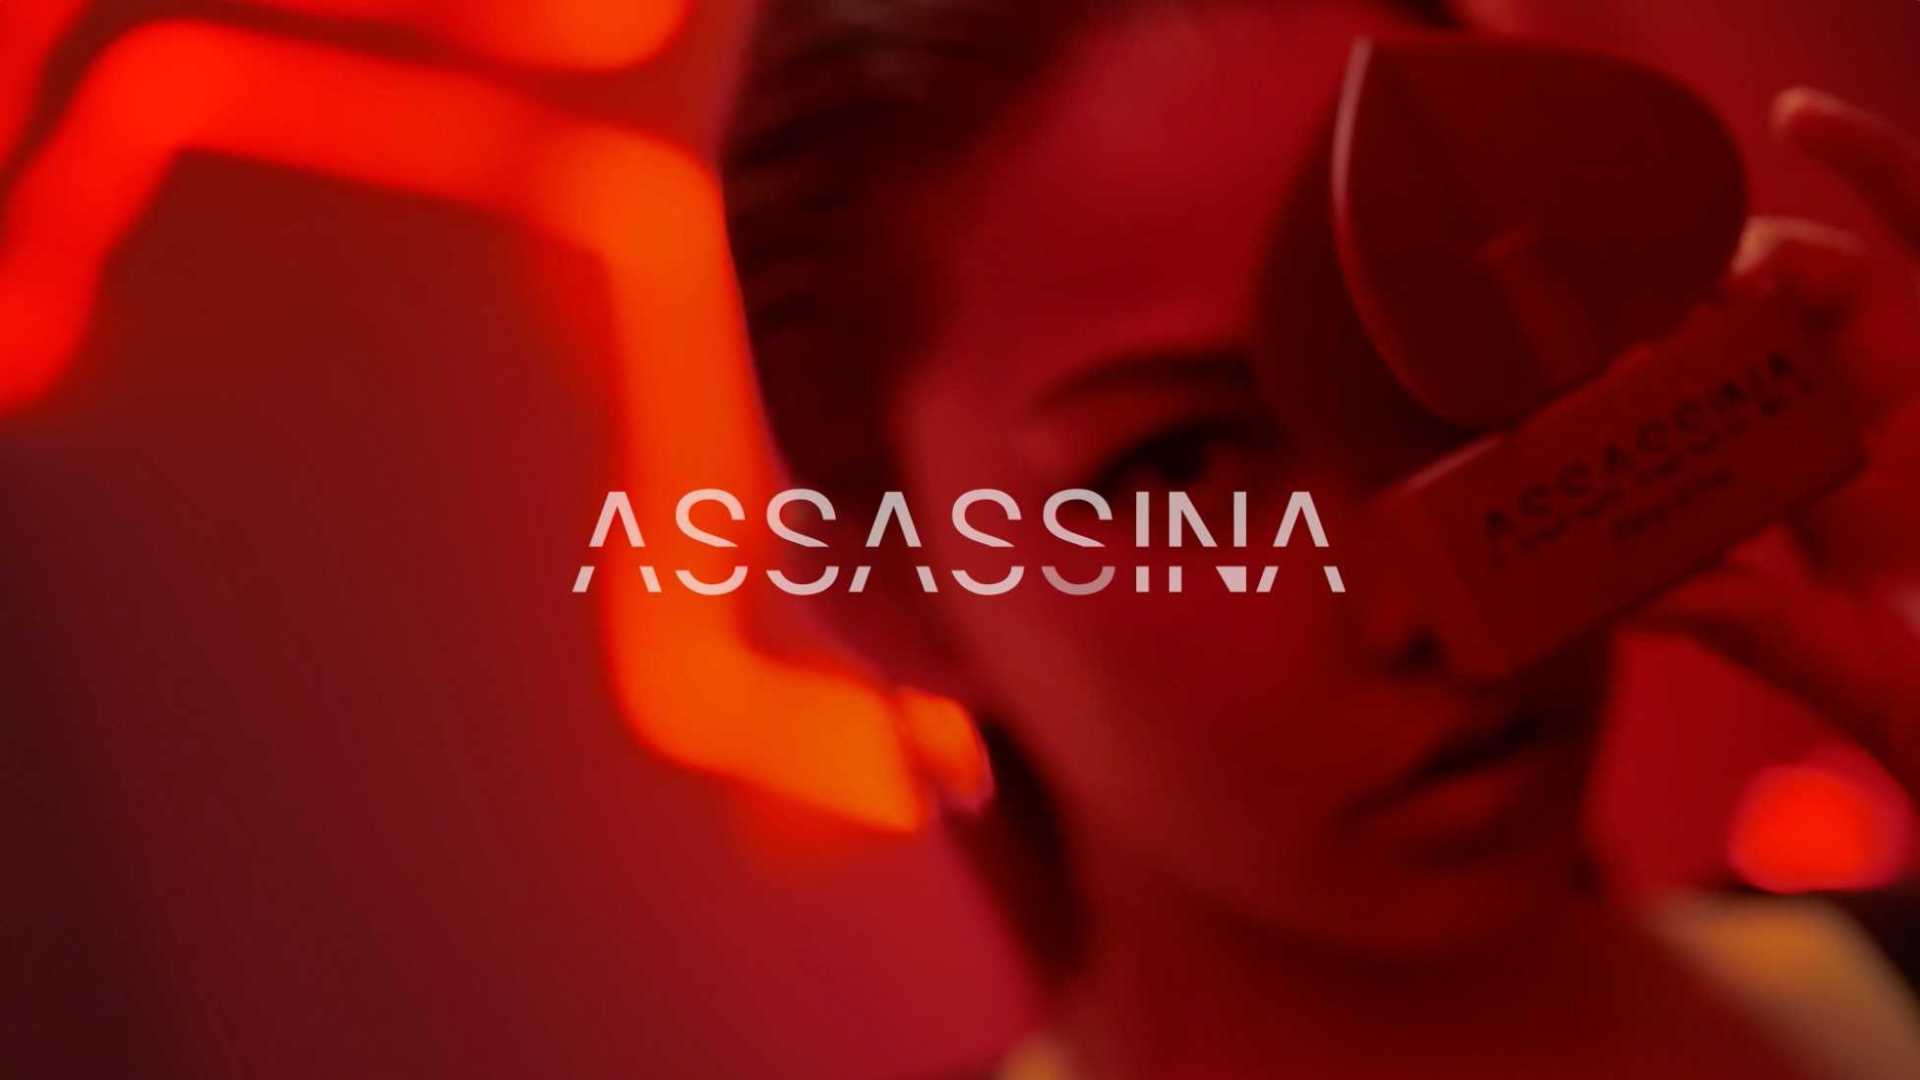 ASSASSINA 莎辛那 2021 品牌宣传片